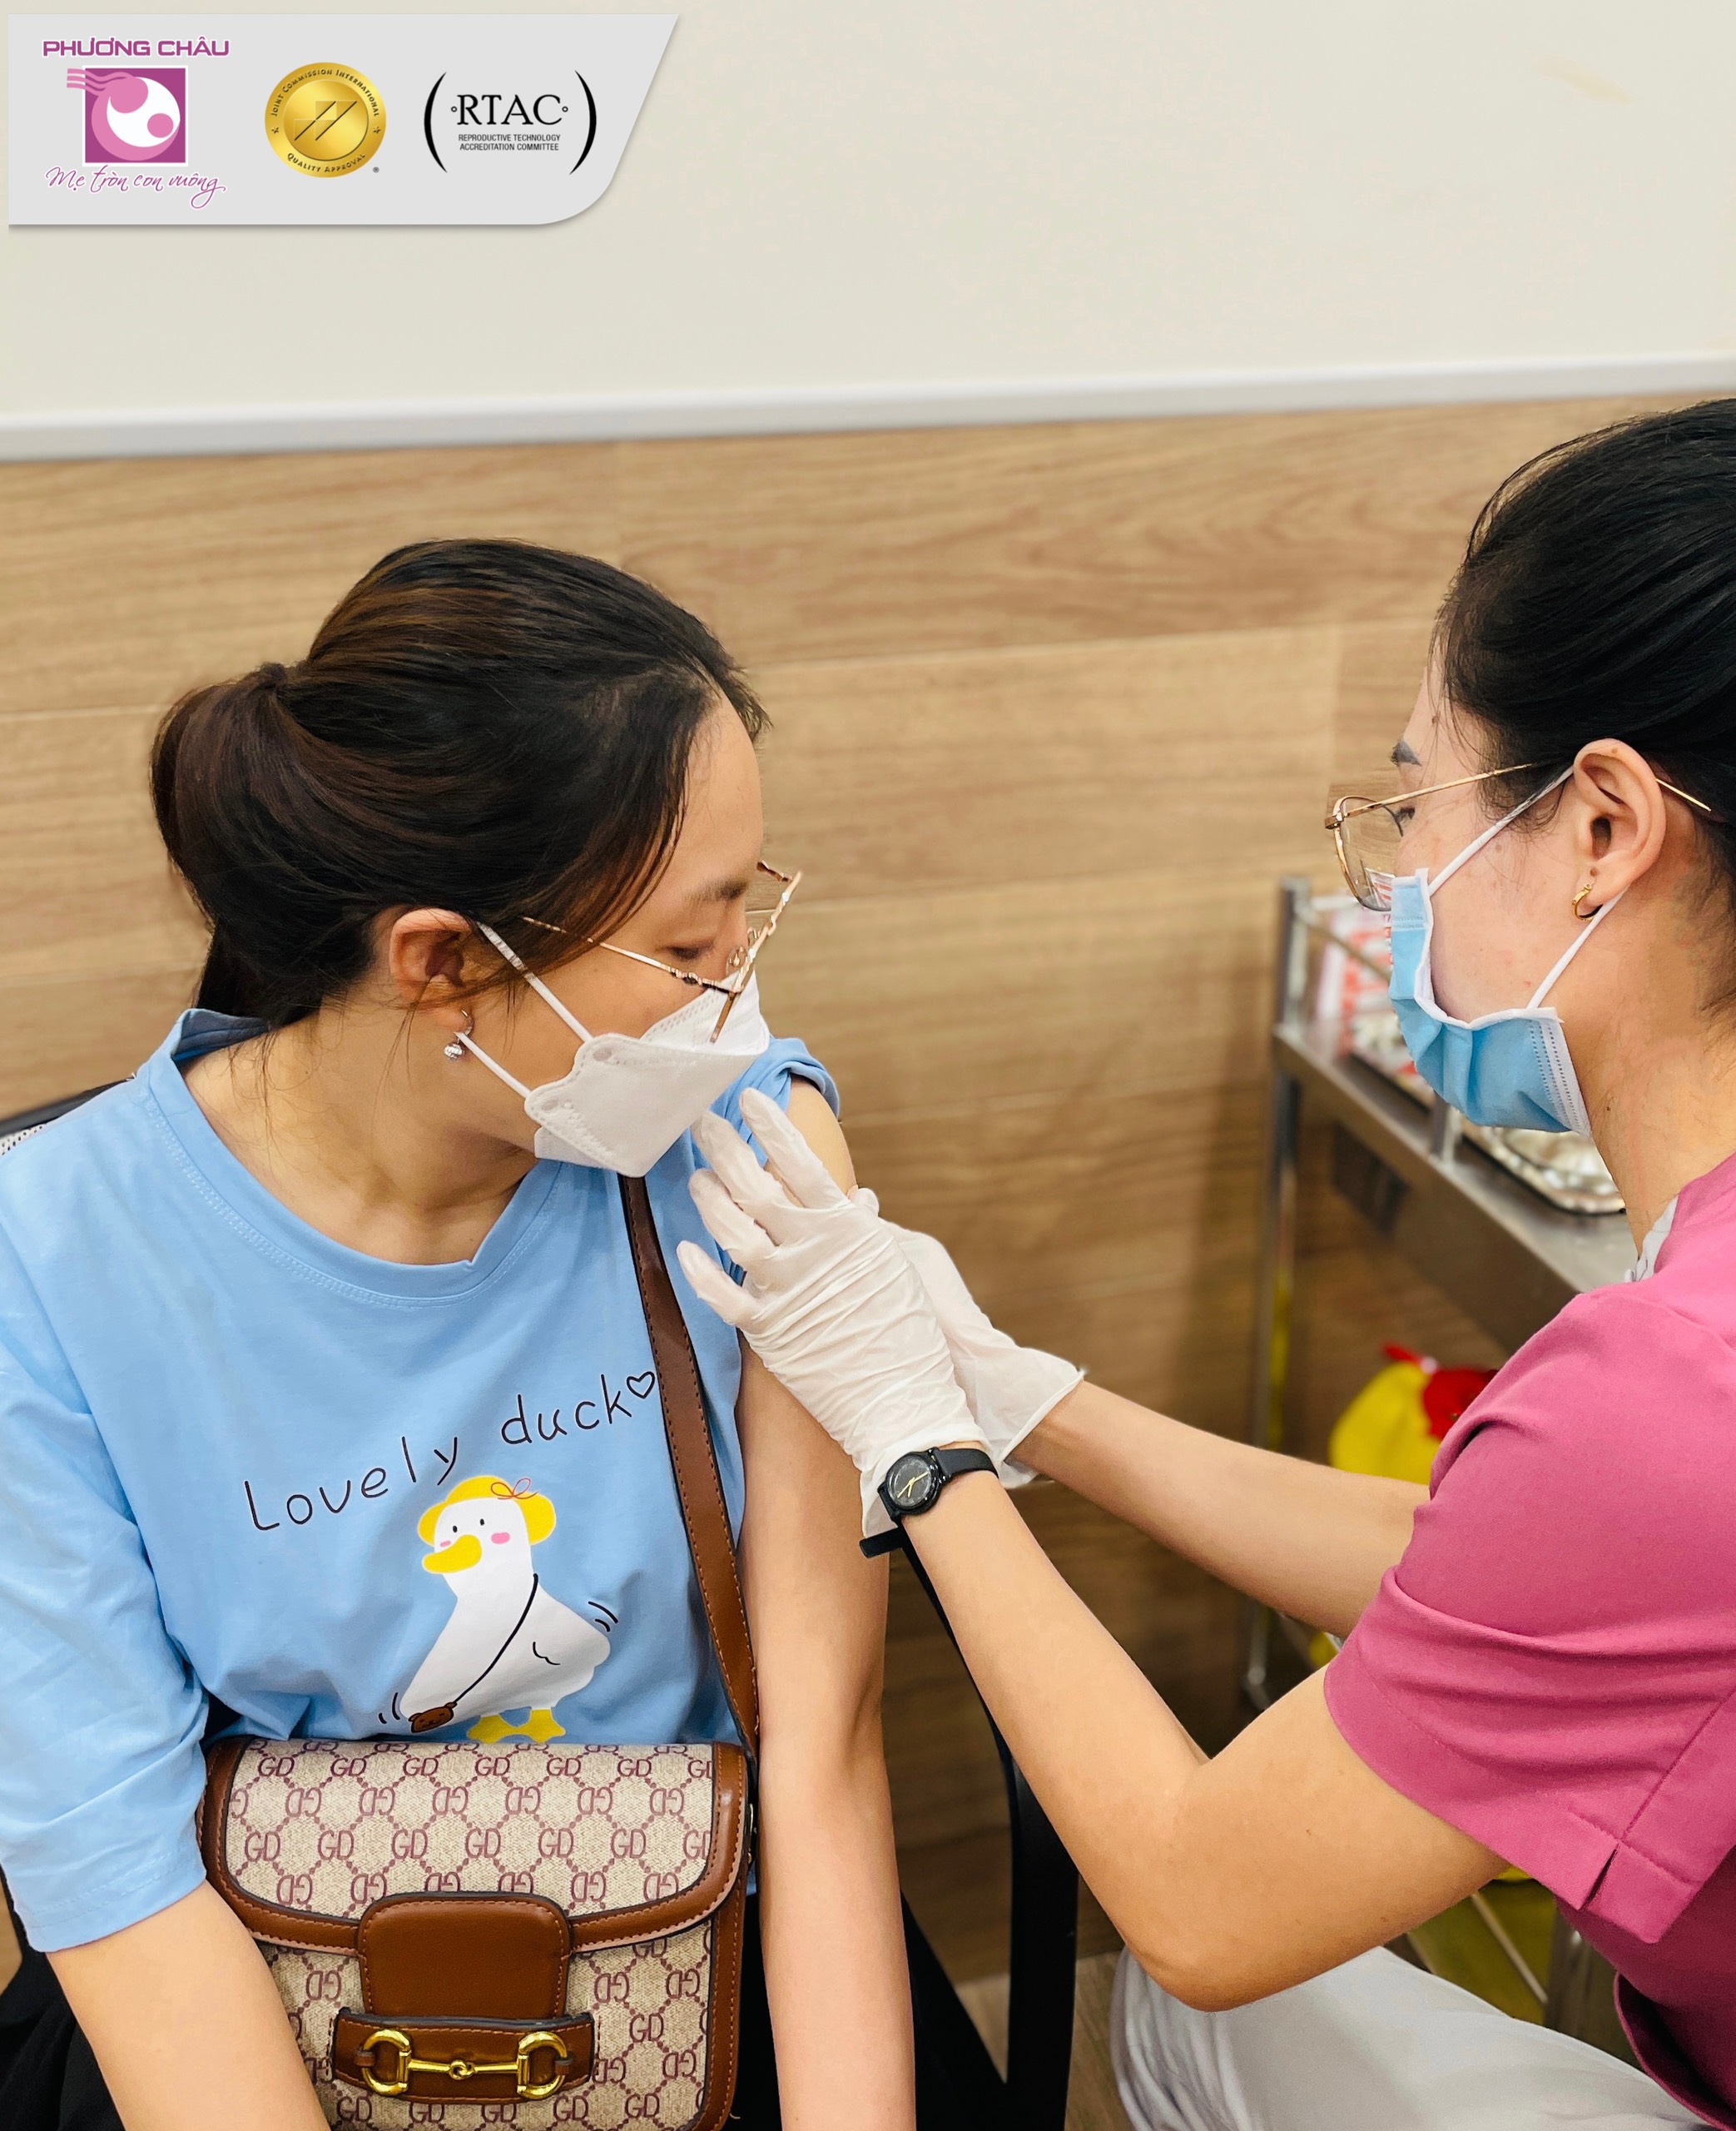 Bệnh cúm là gì? Vai trò của việc tiêm ngừa vắc xin cúm trong thai kỳ quan trọng như thế nào? Cùng Công ty Bệnh viện Quốc Tế Phương Châu  tìm hiểu qua bài viết sau.